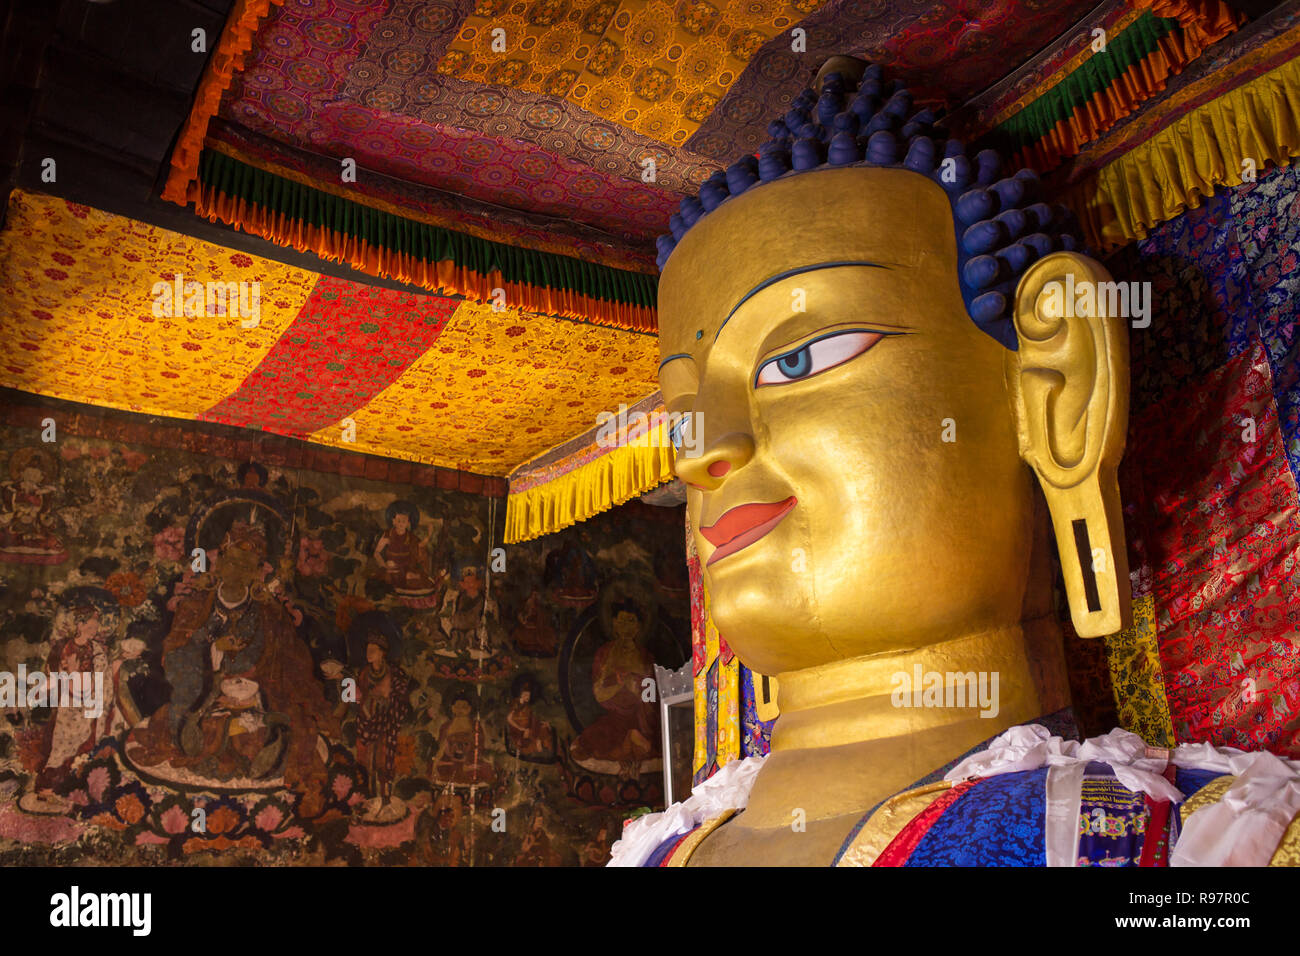 La statue en or du Bouddha Shakyamuni au Palais Shey Monastère, Ladakh, Inde. Banque D'Images